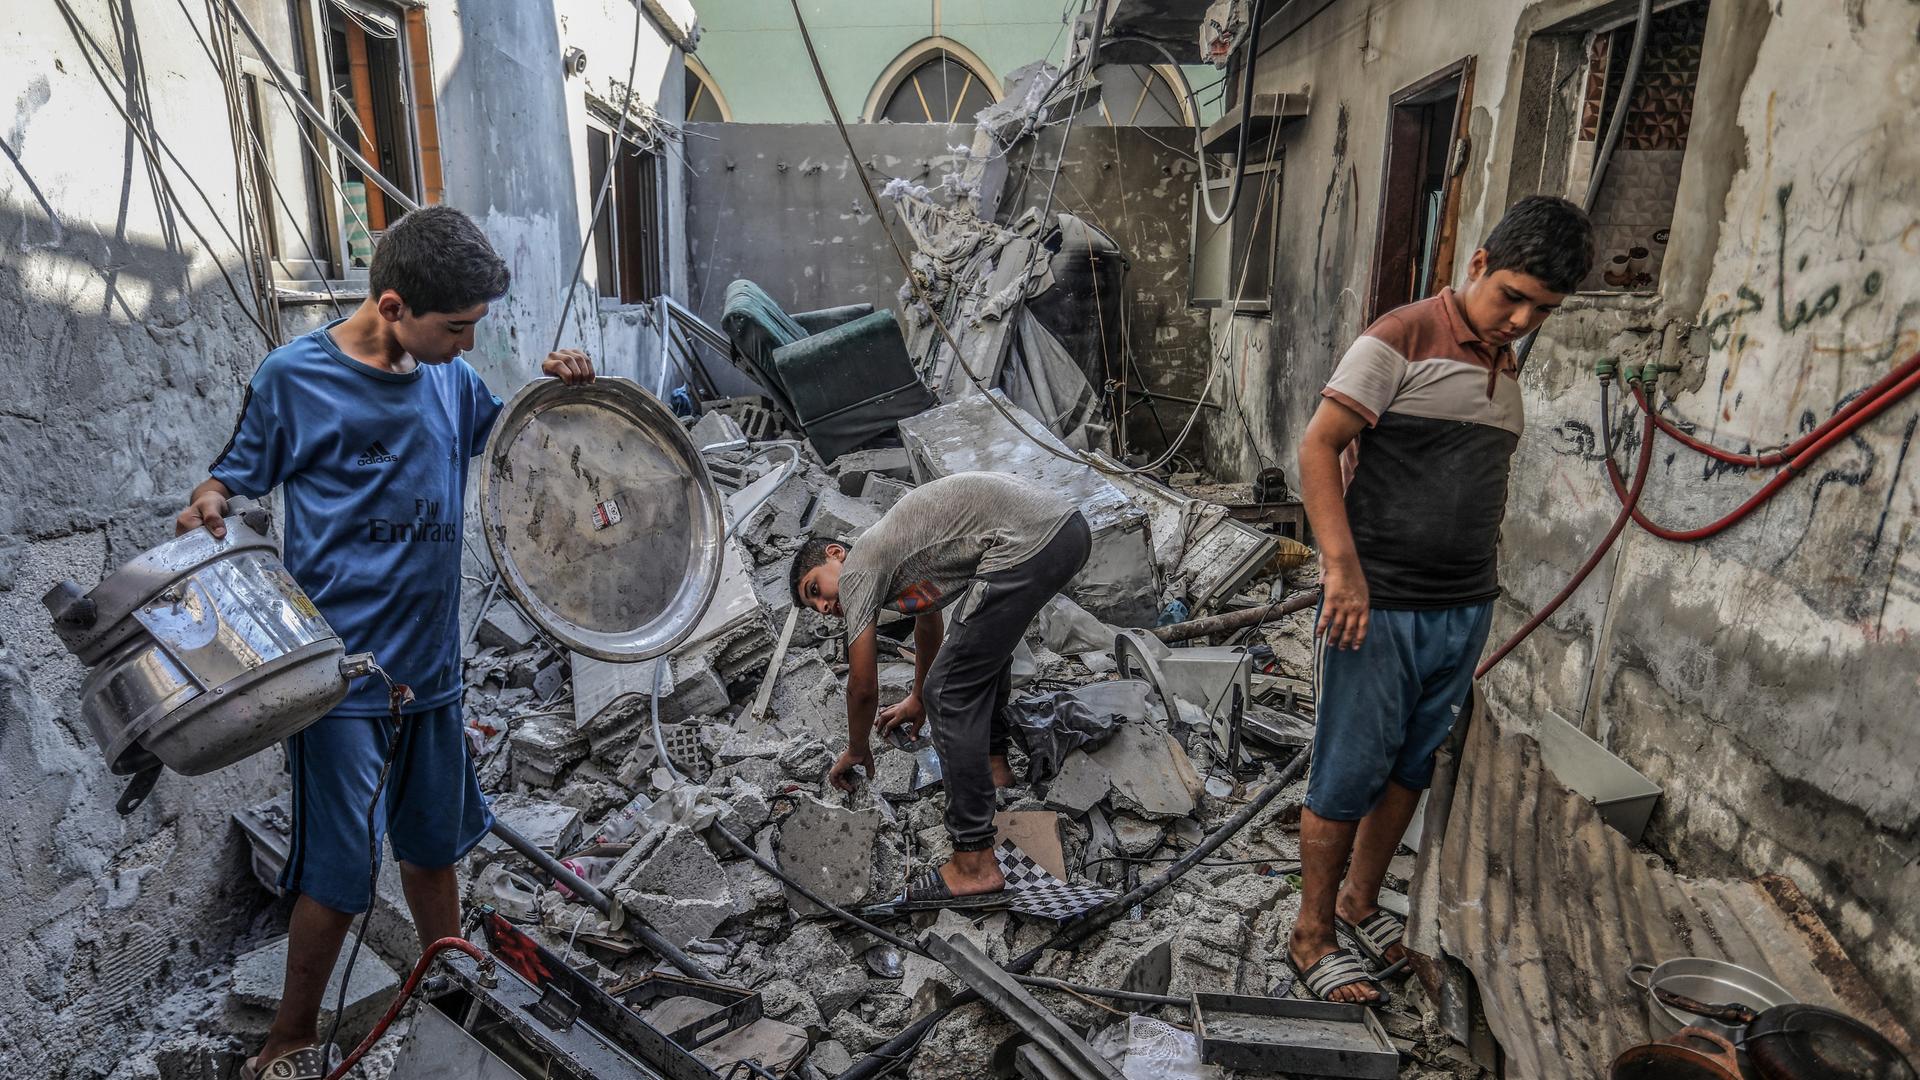 Palästinensische Gebiete, Deir al-Balah: Palästinenser untersuchen ein beschädigtes Haus nach einem israelischen Angriff. 